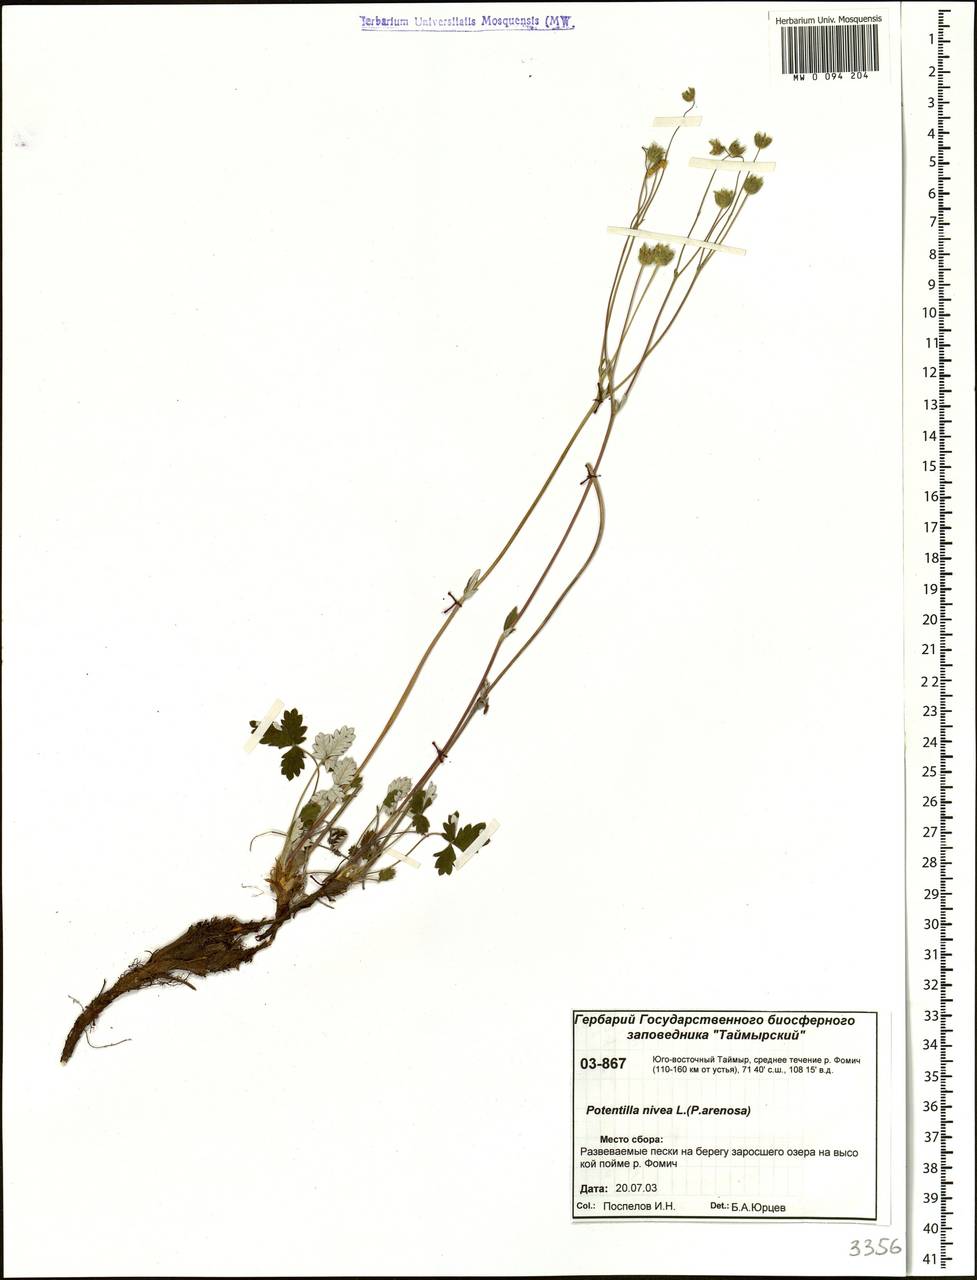 Potentilla nivea L., Siberia, Central Siberia (S3) (Russia)